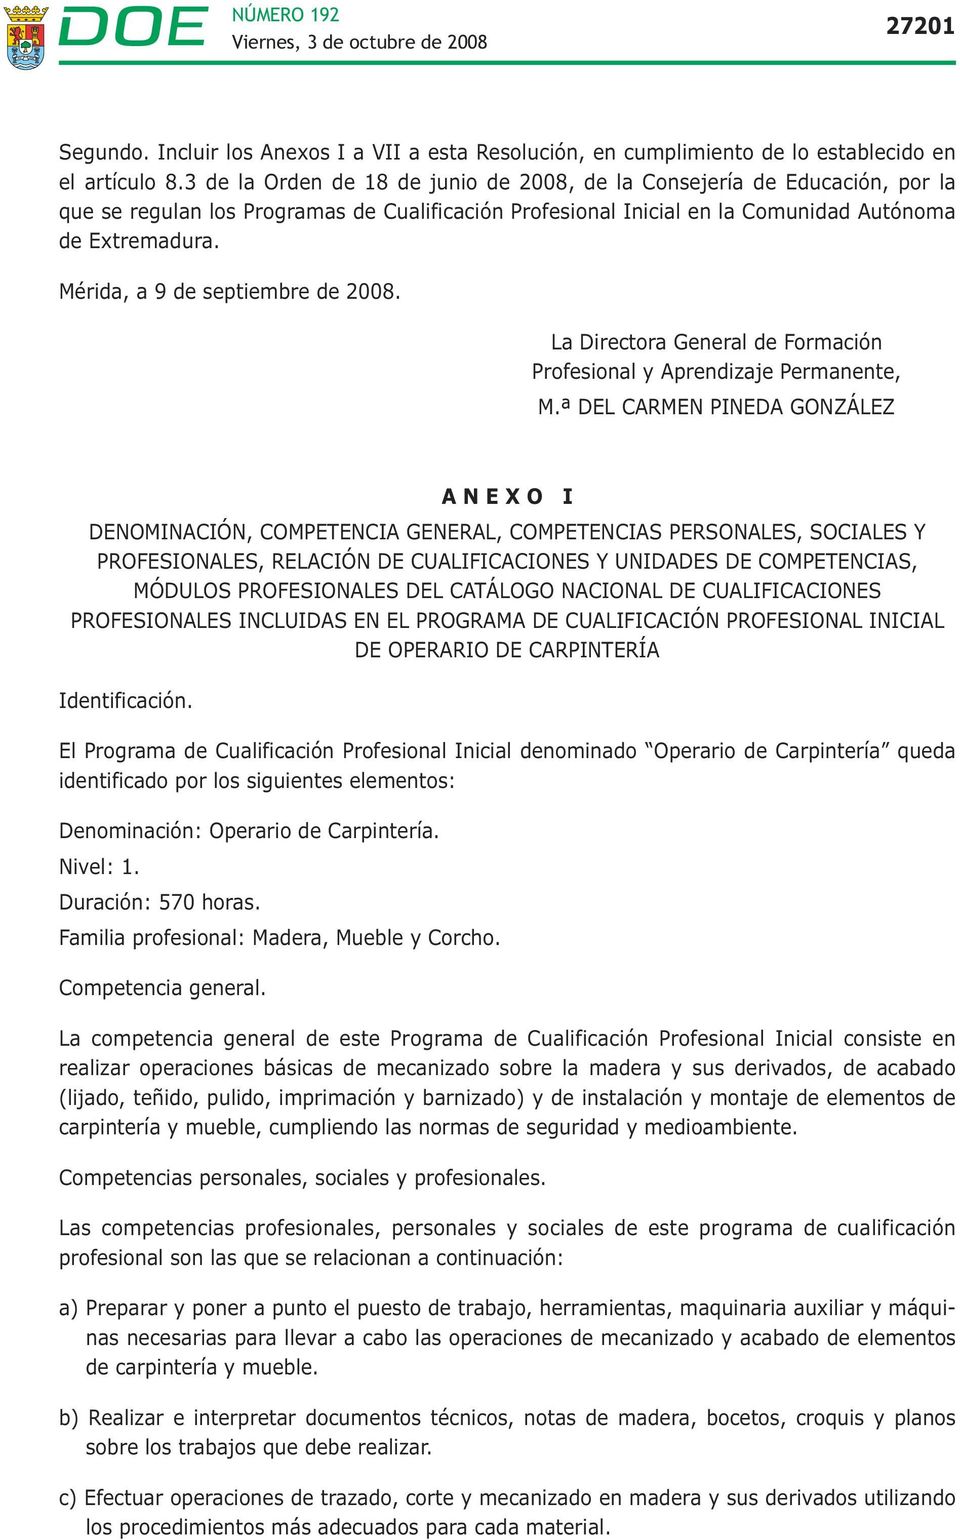 Mérida, a 9 de septiembre de 2008. La Directora General de Formación Profesional y Aprendizaje Permanente, M.